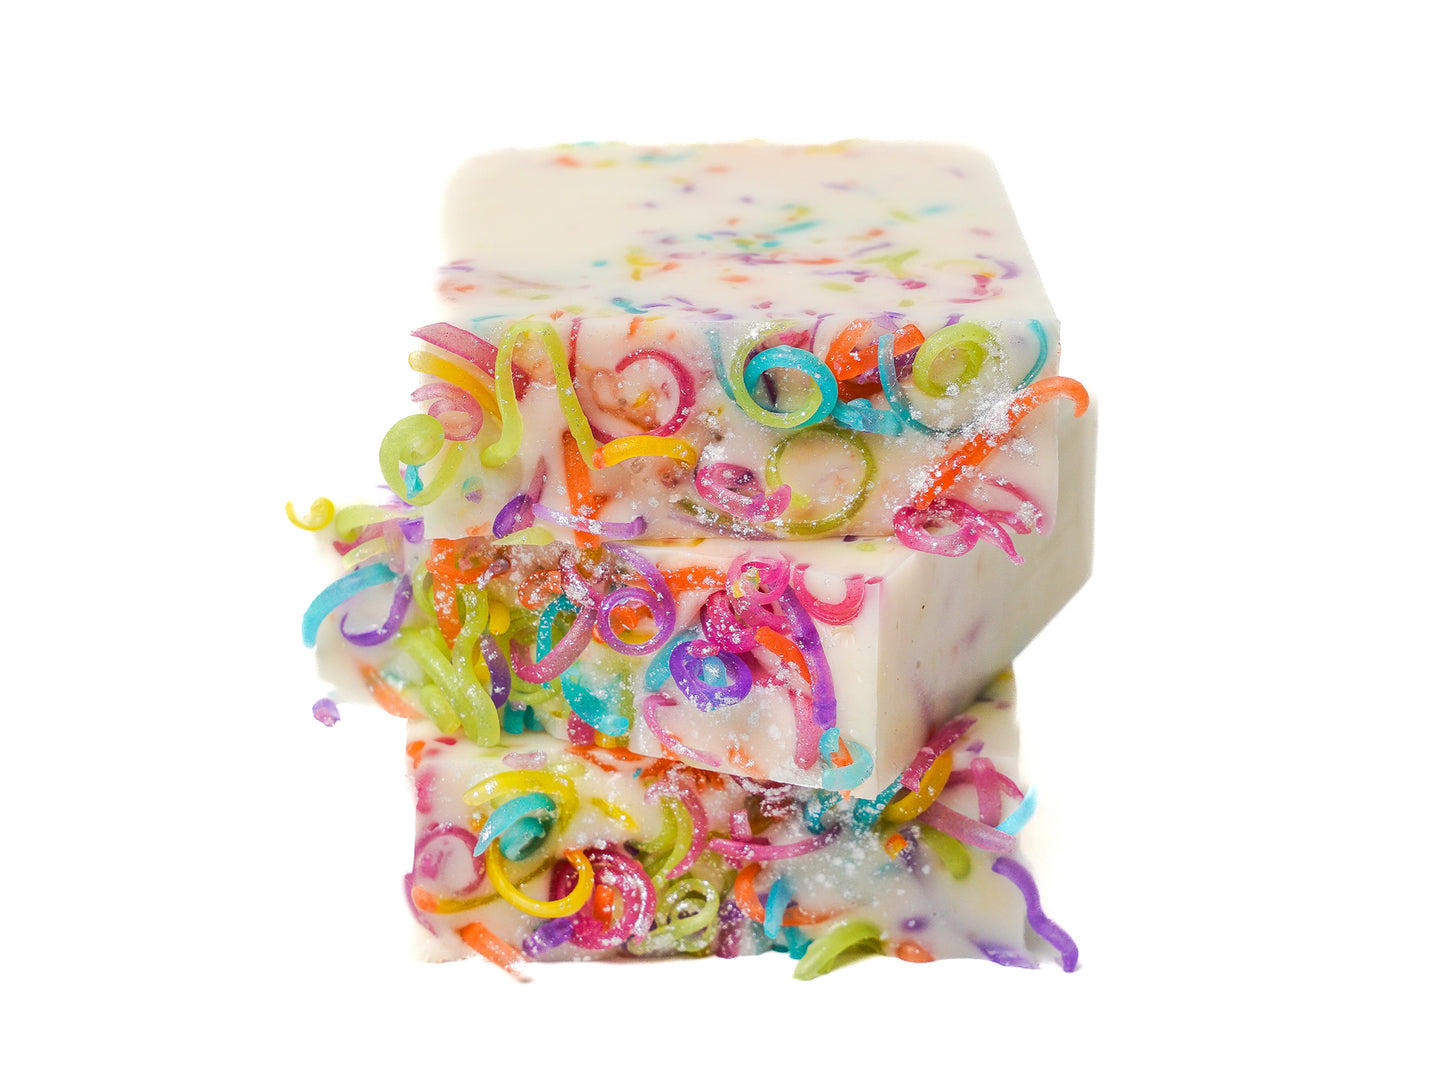 Confetti Cake - Glycerin Soap